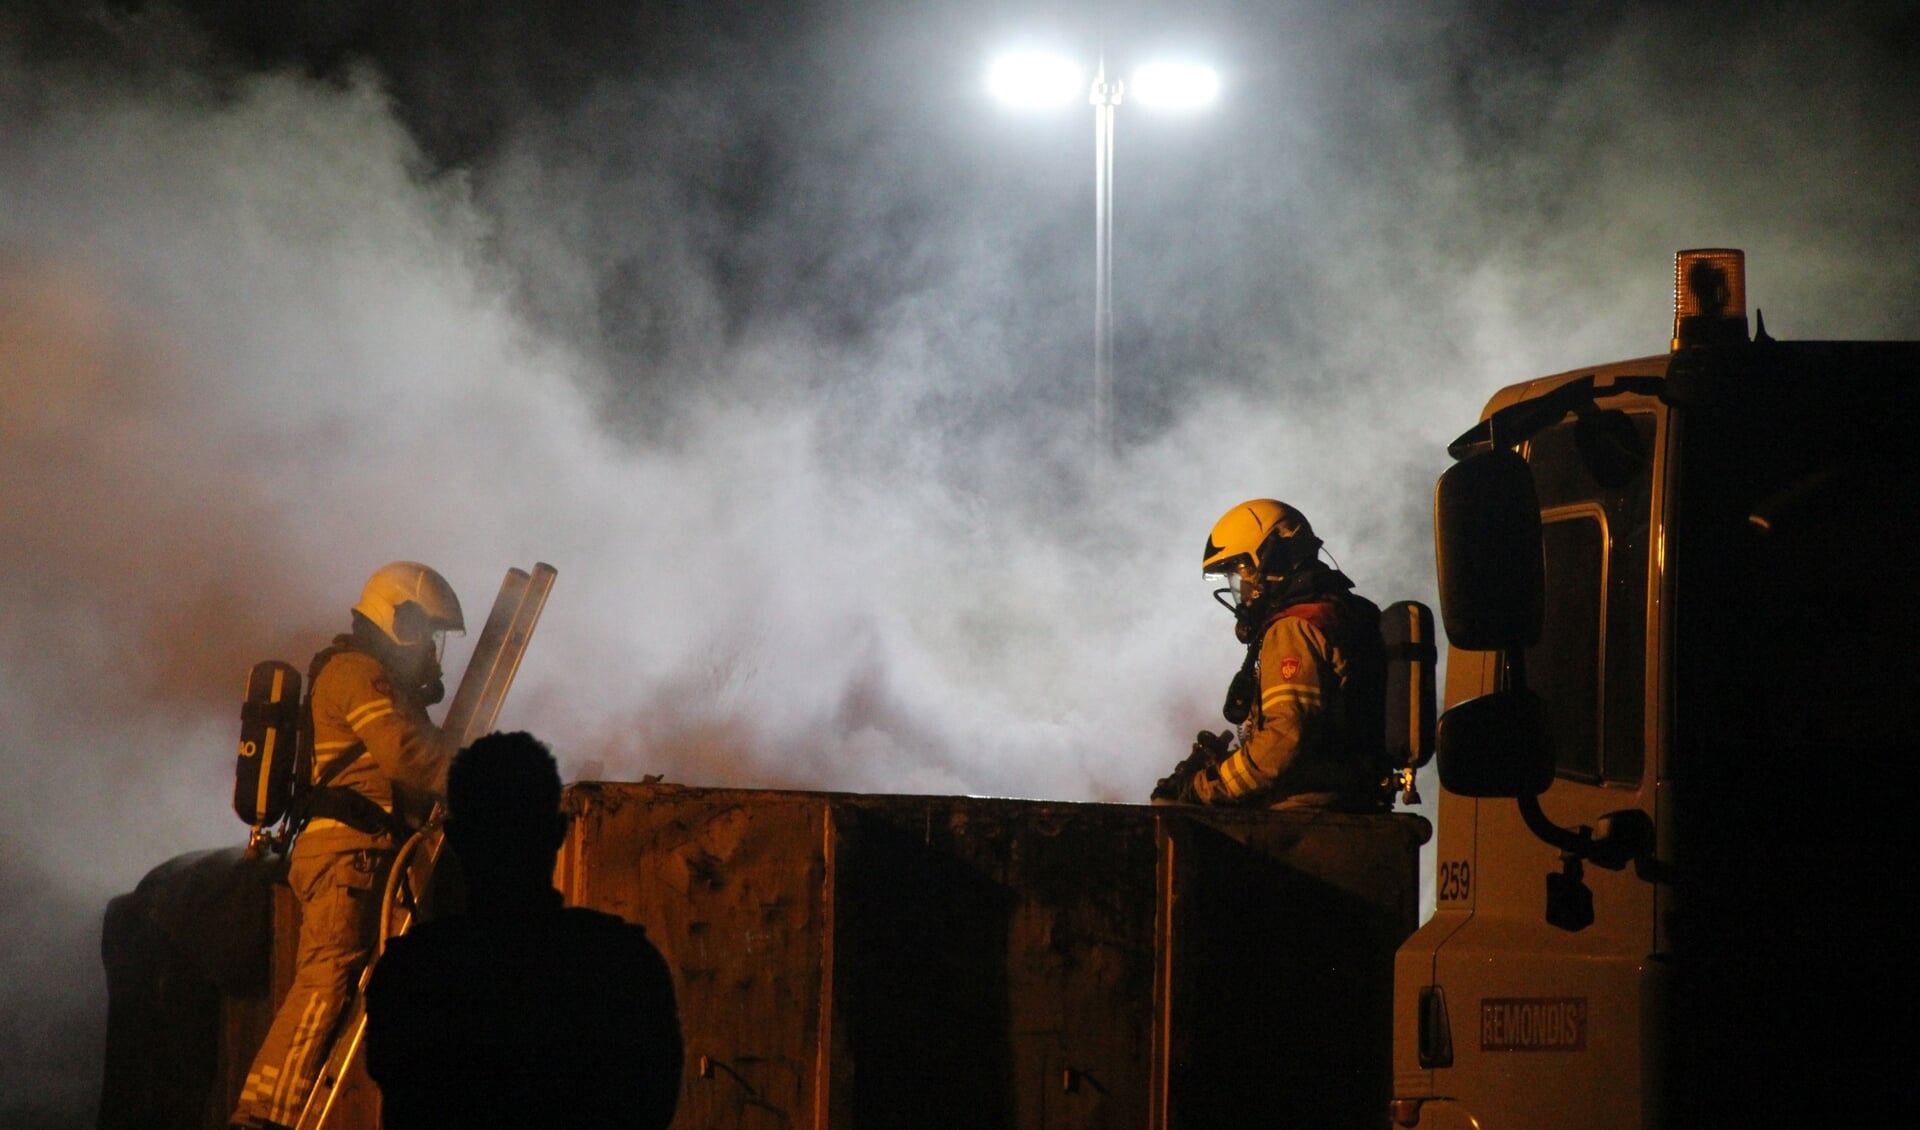 De brandweer had het vuur snel onder controle. Foto: GinoPress B.V.